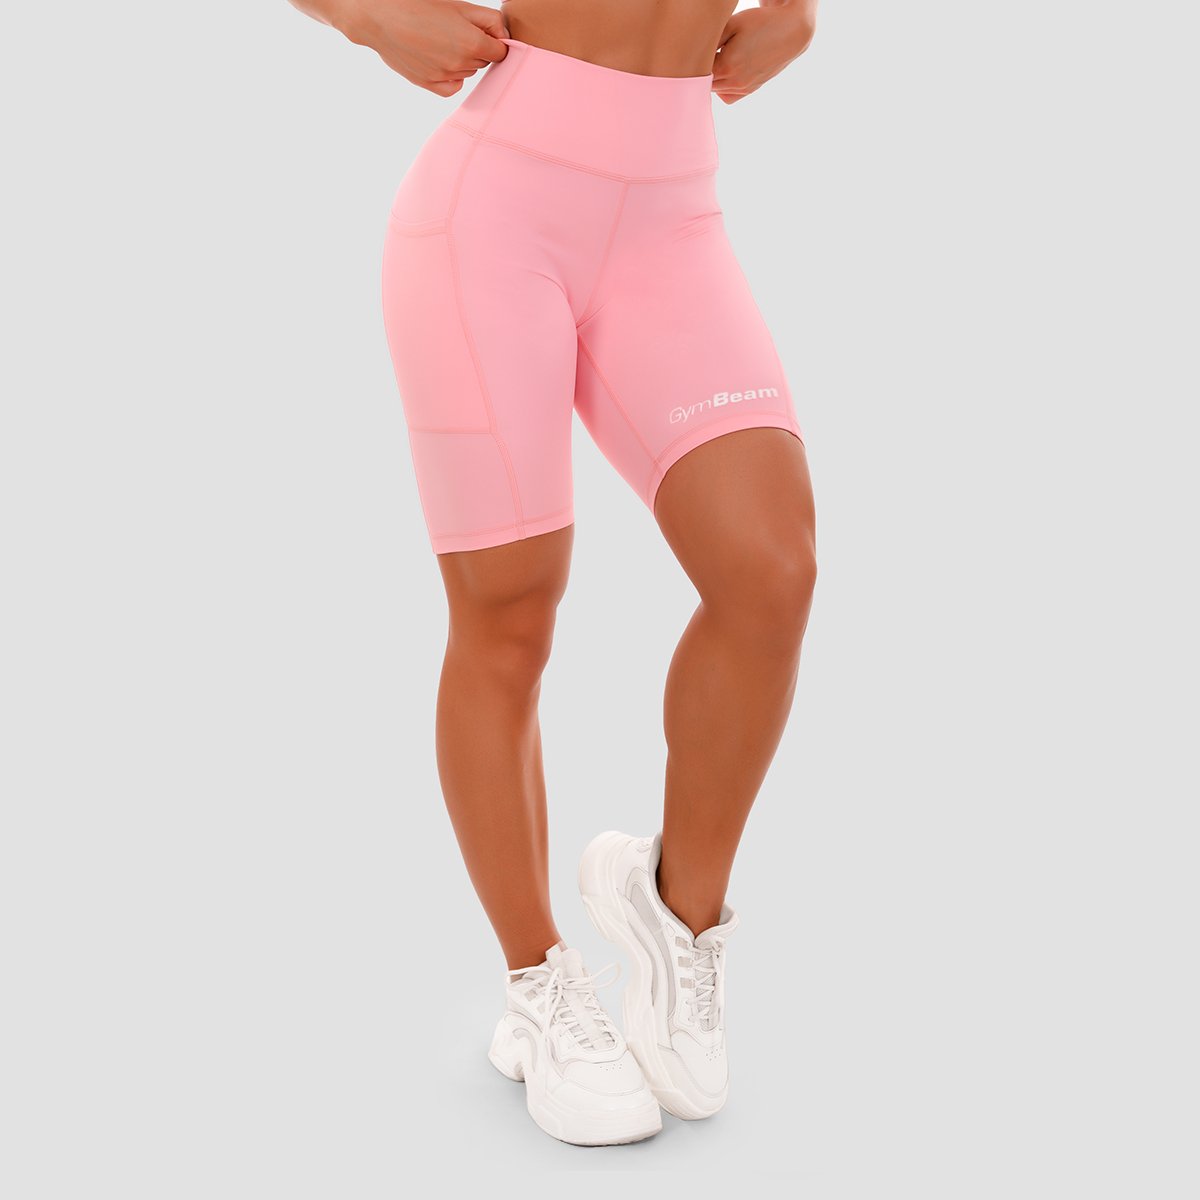 Dámské šortky Biker pink - GymBeam růžová XL